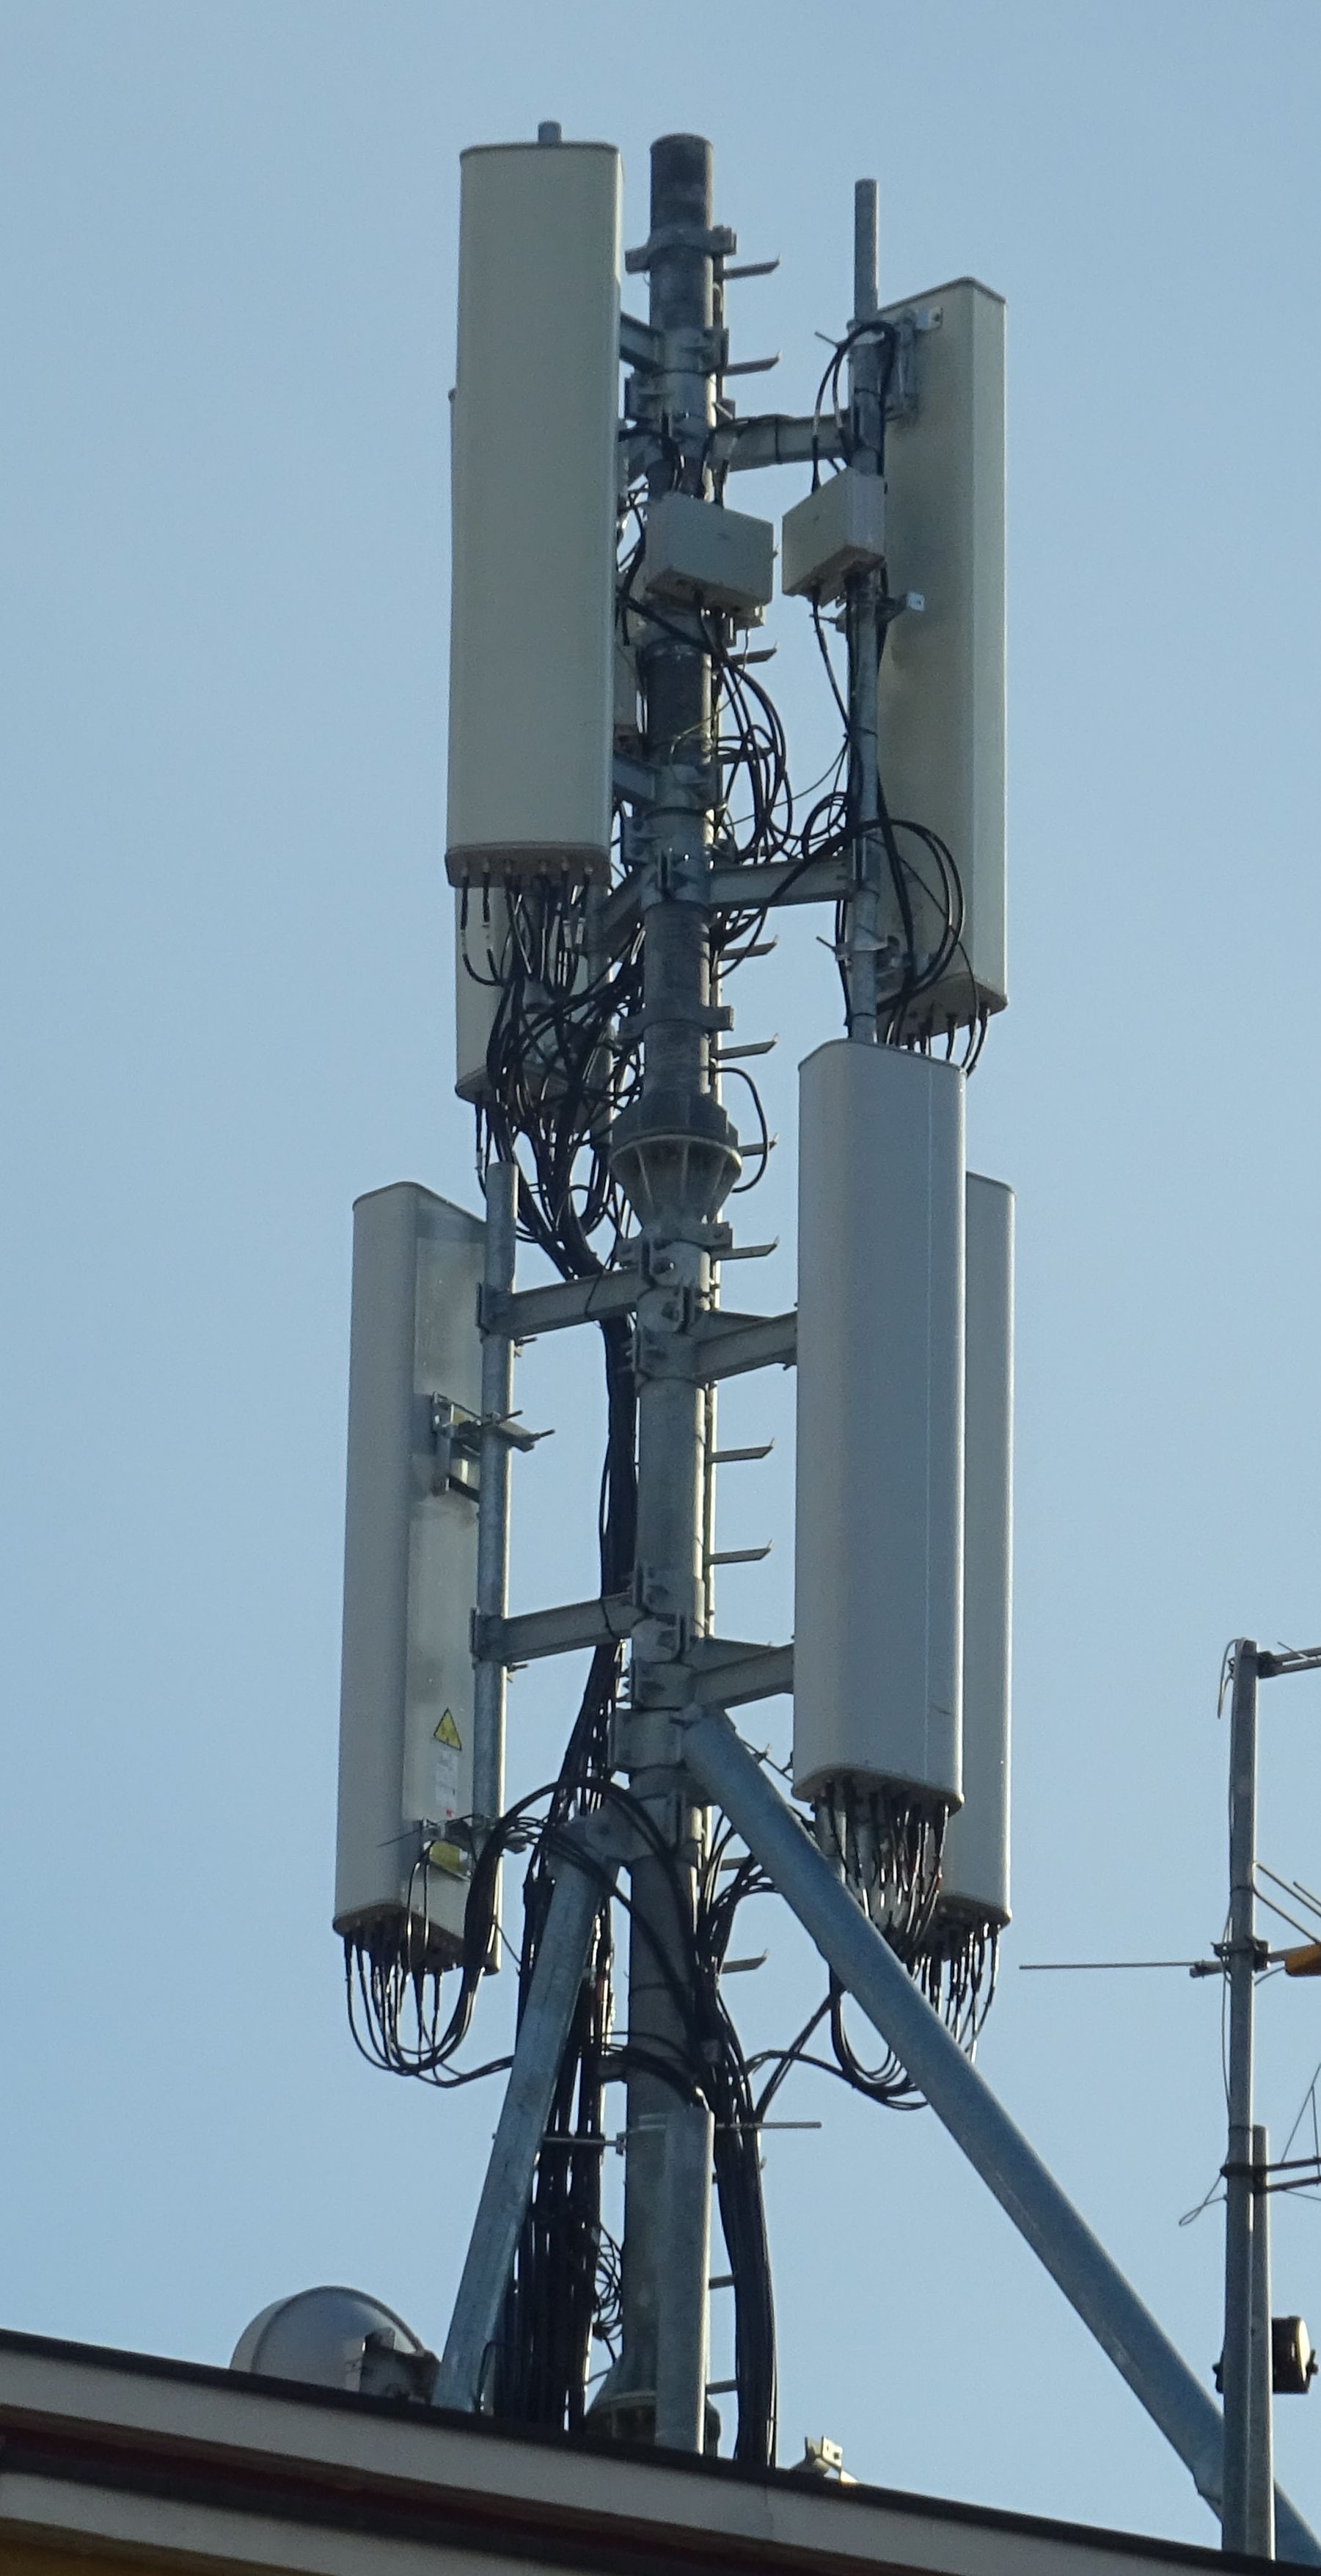 Die Antennen von Wind3 und Iliad (noch nicht in Betrieb) im Dezember 2020. Foto Daniel Z.